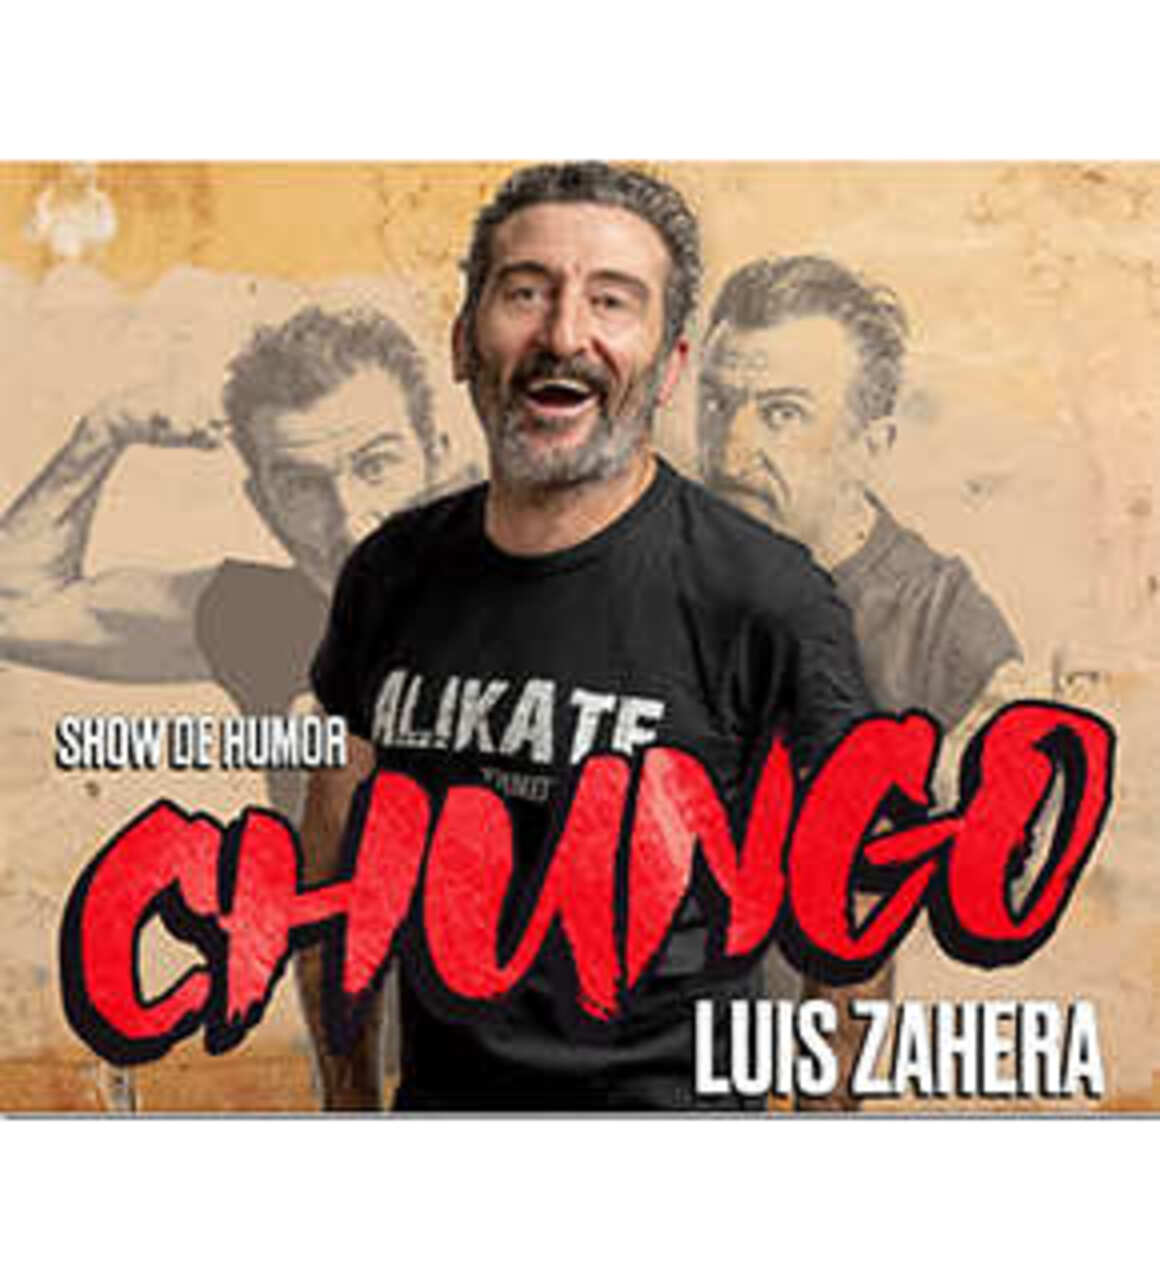 "Chungo", un monólogo de Luis Zahera